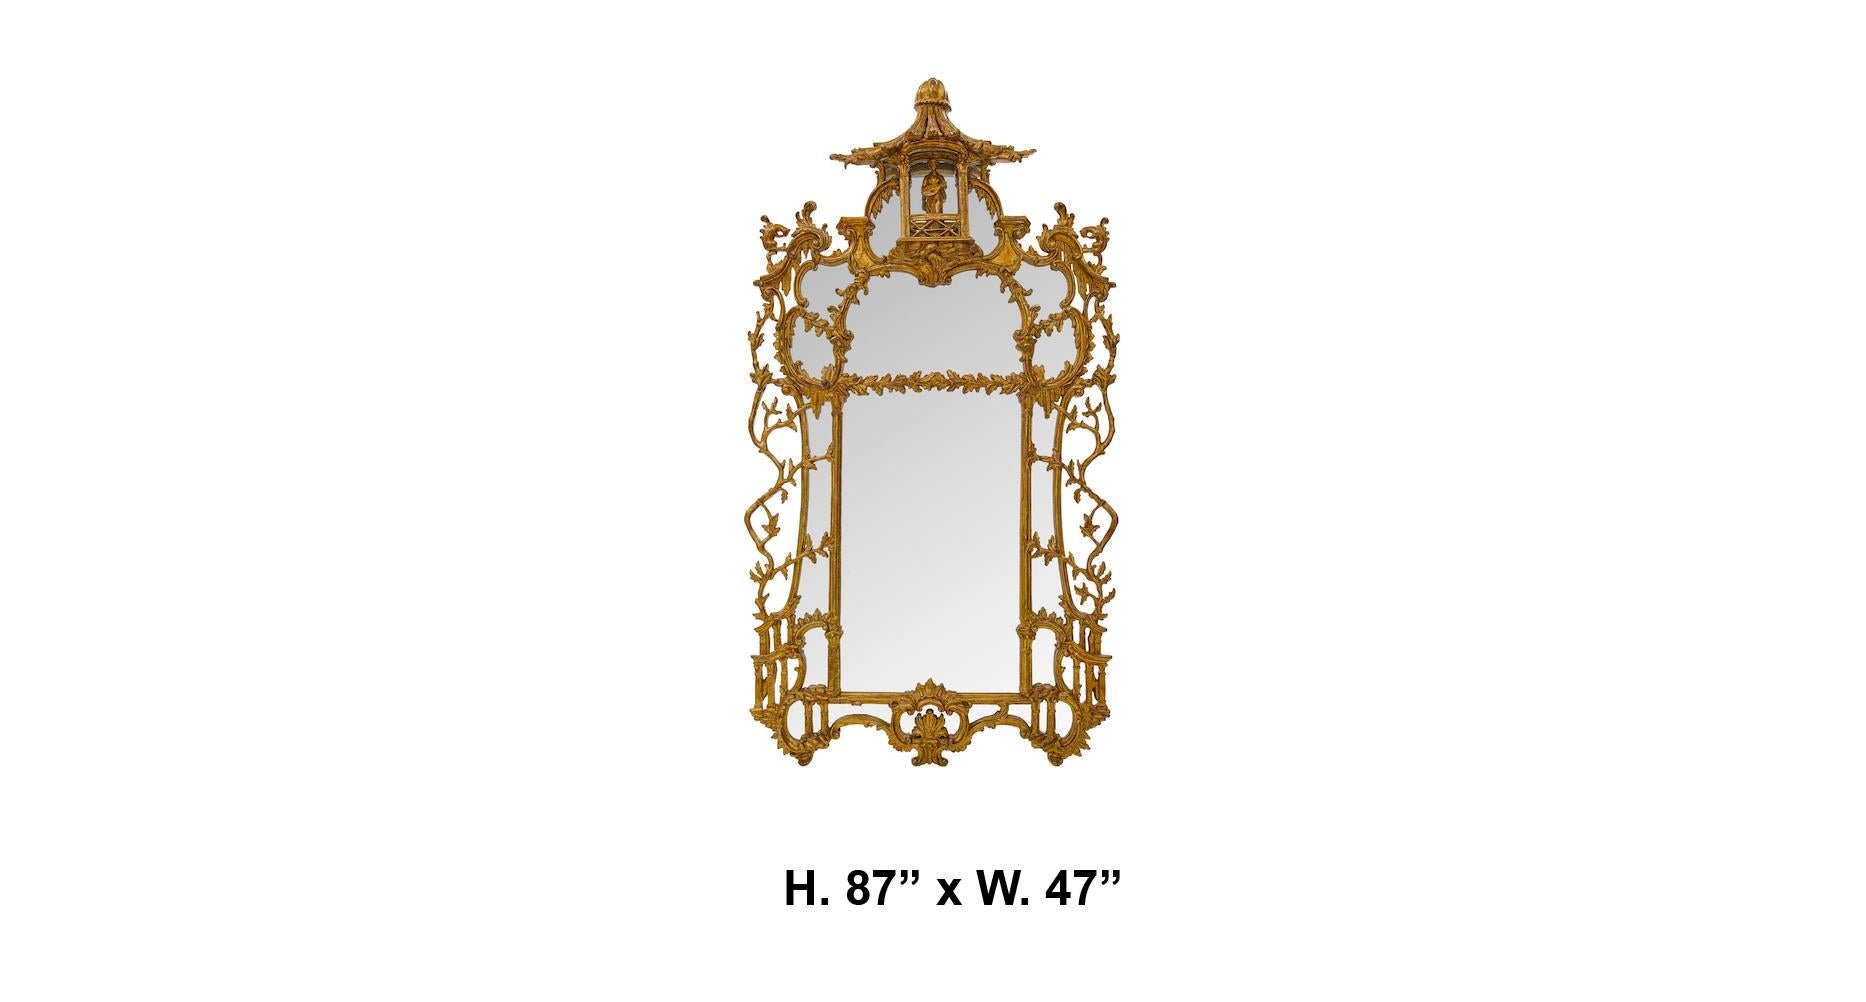 Exceptionnel miroir en bois doré sculpté de style Chippendale, datant du XIXe siècle, de style George III. L'œuvre est surmontée d'un balcon finement sculpté abritant un petit musicien doré avec un instrument de musique au-dessus d'un miroir entouré